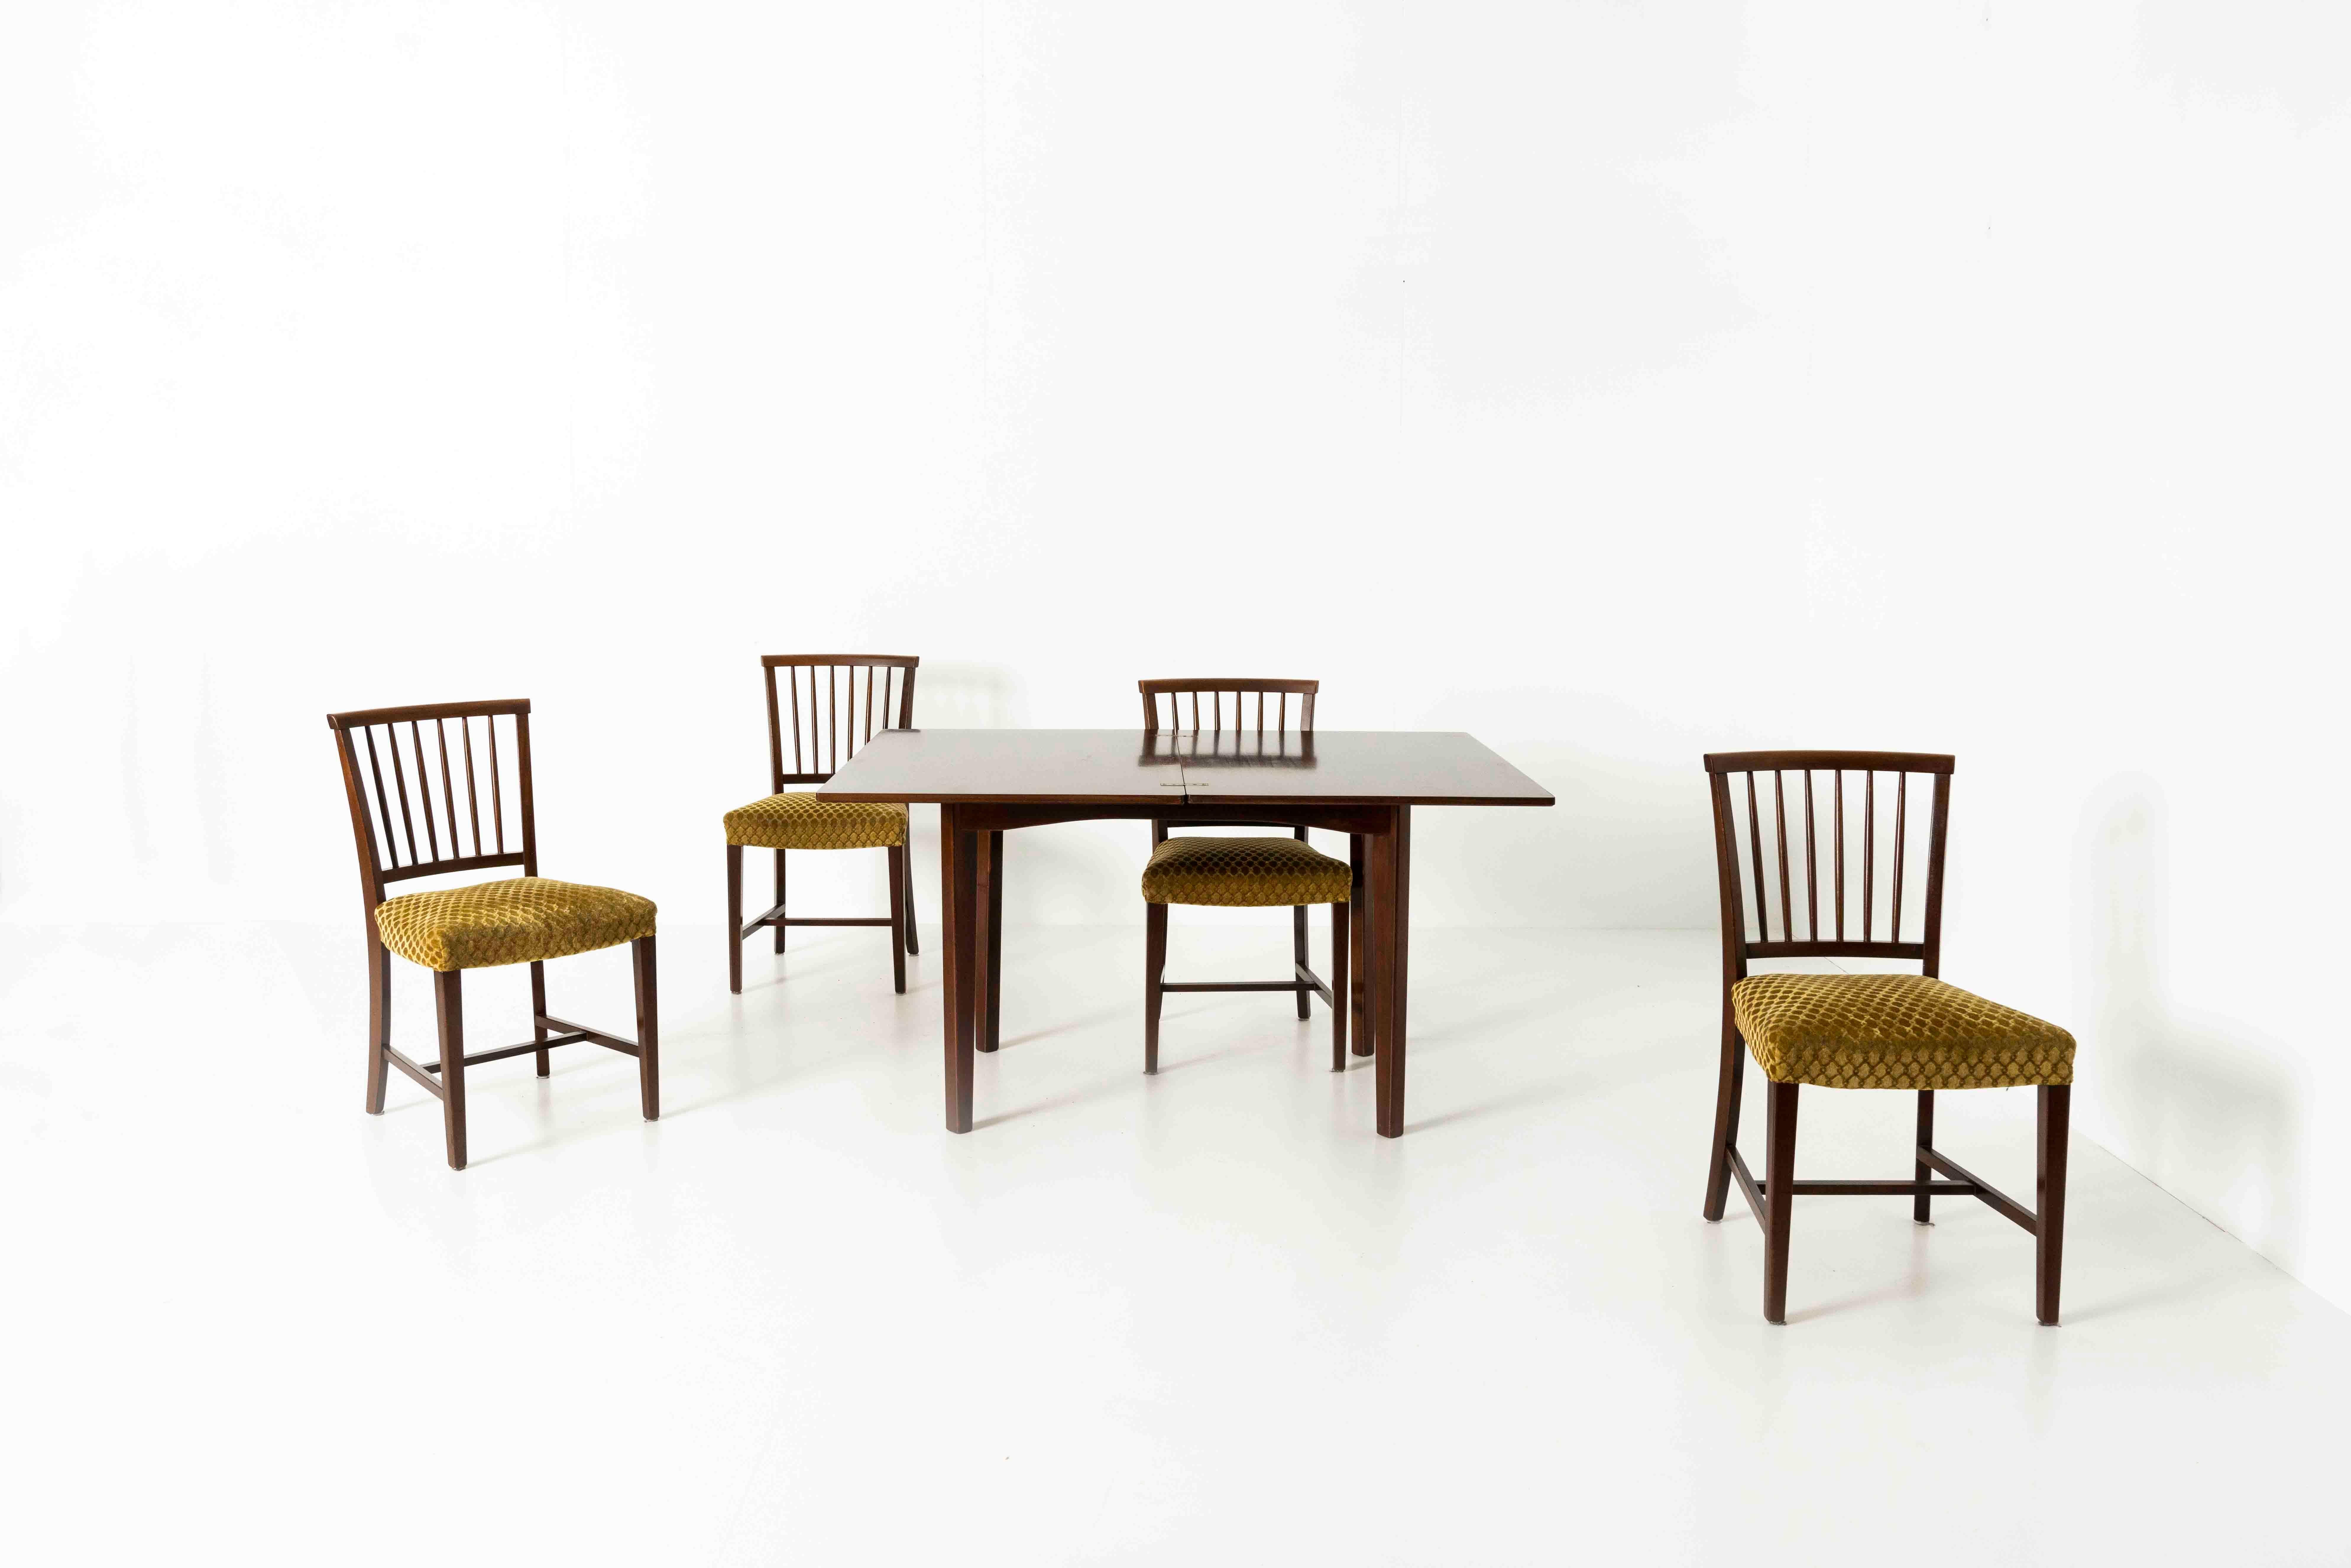 Schöner Satz von vier Vintage-Esszimmerstühlen aus Holz und ockergelbem Stoff, ca. in den 1960er Jahren. Obwohl es keine Klarheit über die Herkunft dieser Stühle gibt, glauben wir, dass es sich um ein eher traditionelles dänisches Design aus der